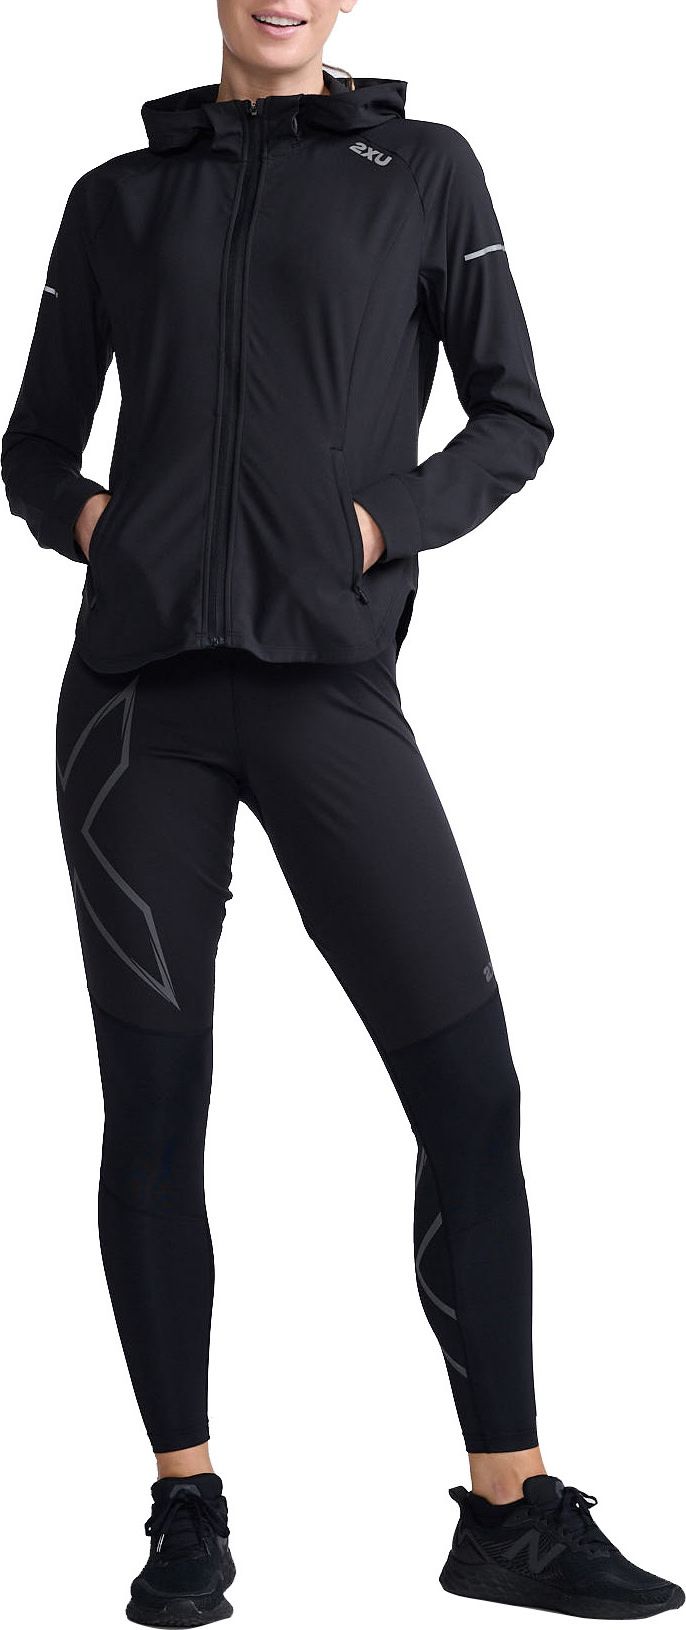 2XU Women's Aero Jacket Black/Silver Reflective 2XU